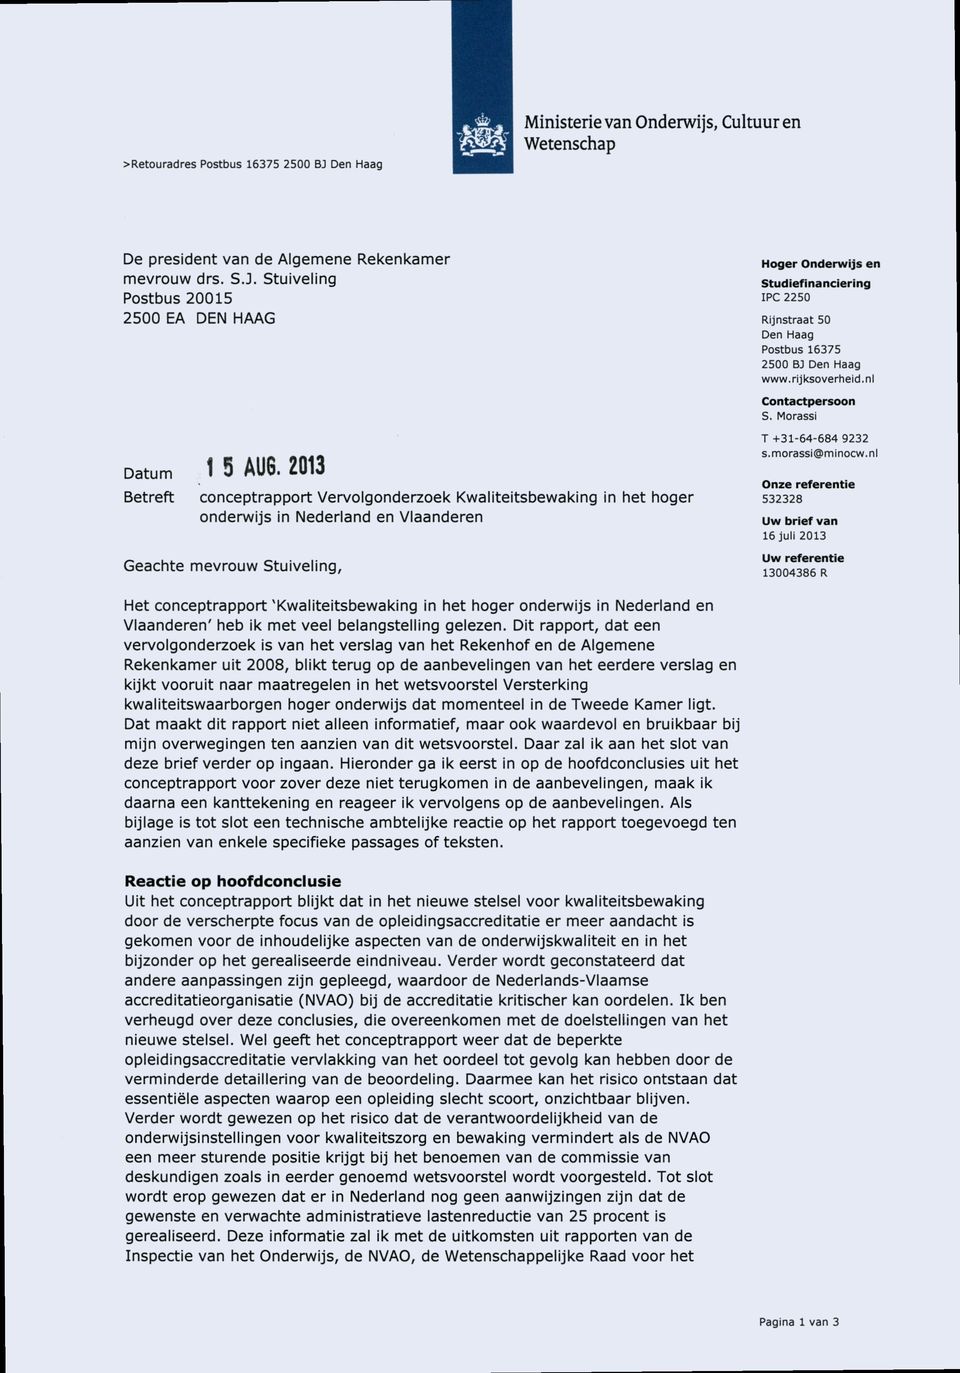 2013 Betreft conceptrapport Vervolgonderzoek Kwaliteitsbewaking in het hoger onderwijs in Nederland en Vlaanderen Geachte mevrouw Stuiveling, T +31-64-684 9232 s.morassi@minocw.